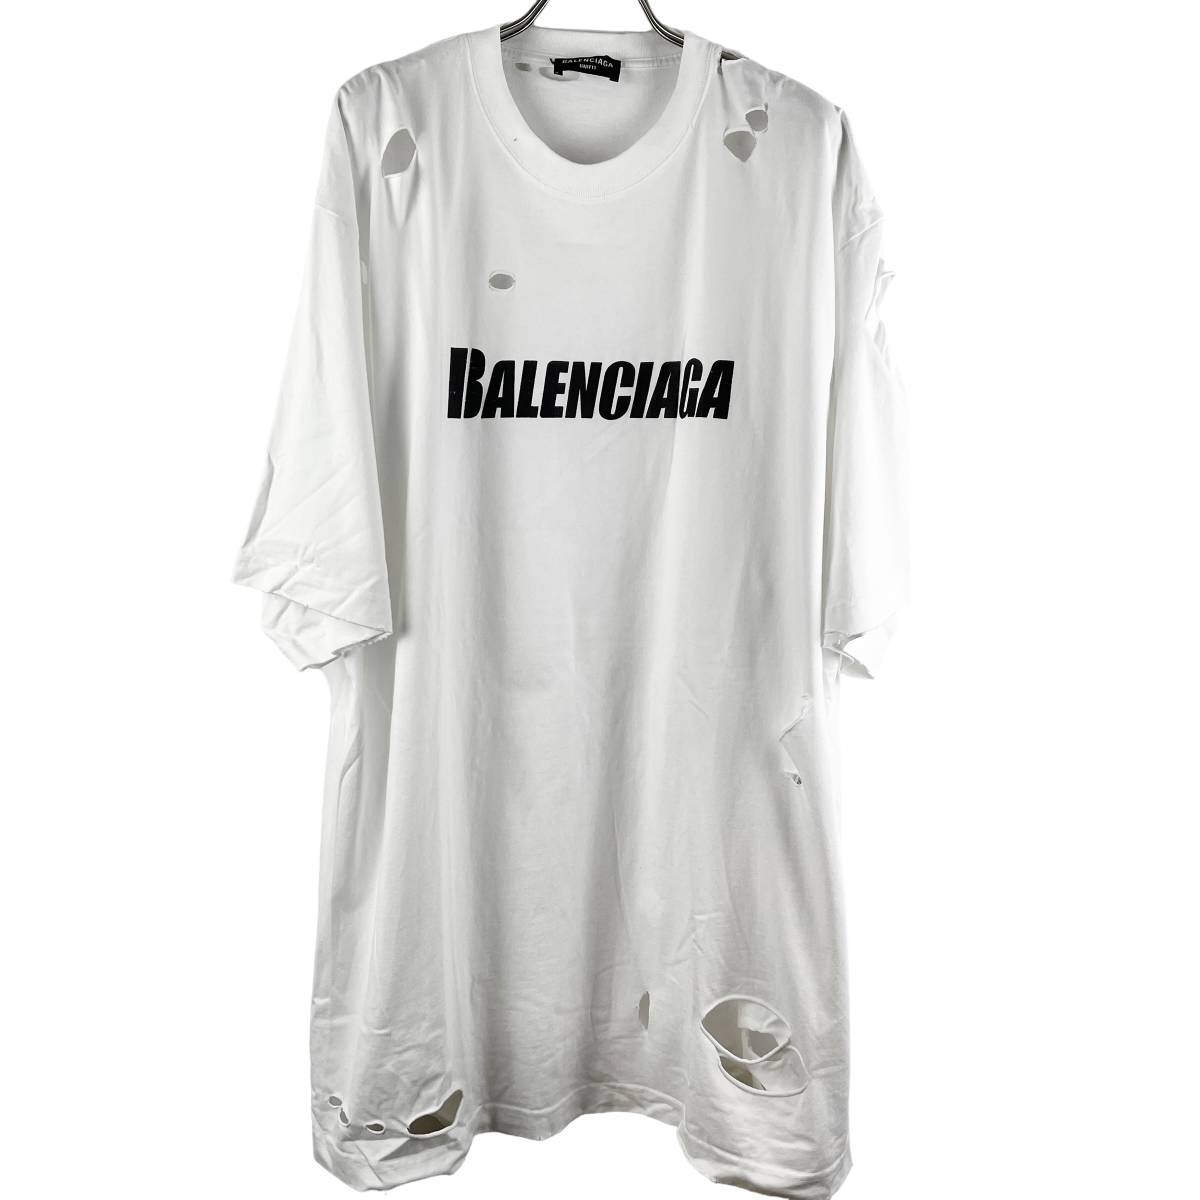 Balenciaga(バレンシアガ) Damage Design Shortsleeve T Shirt (white)